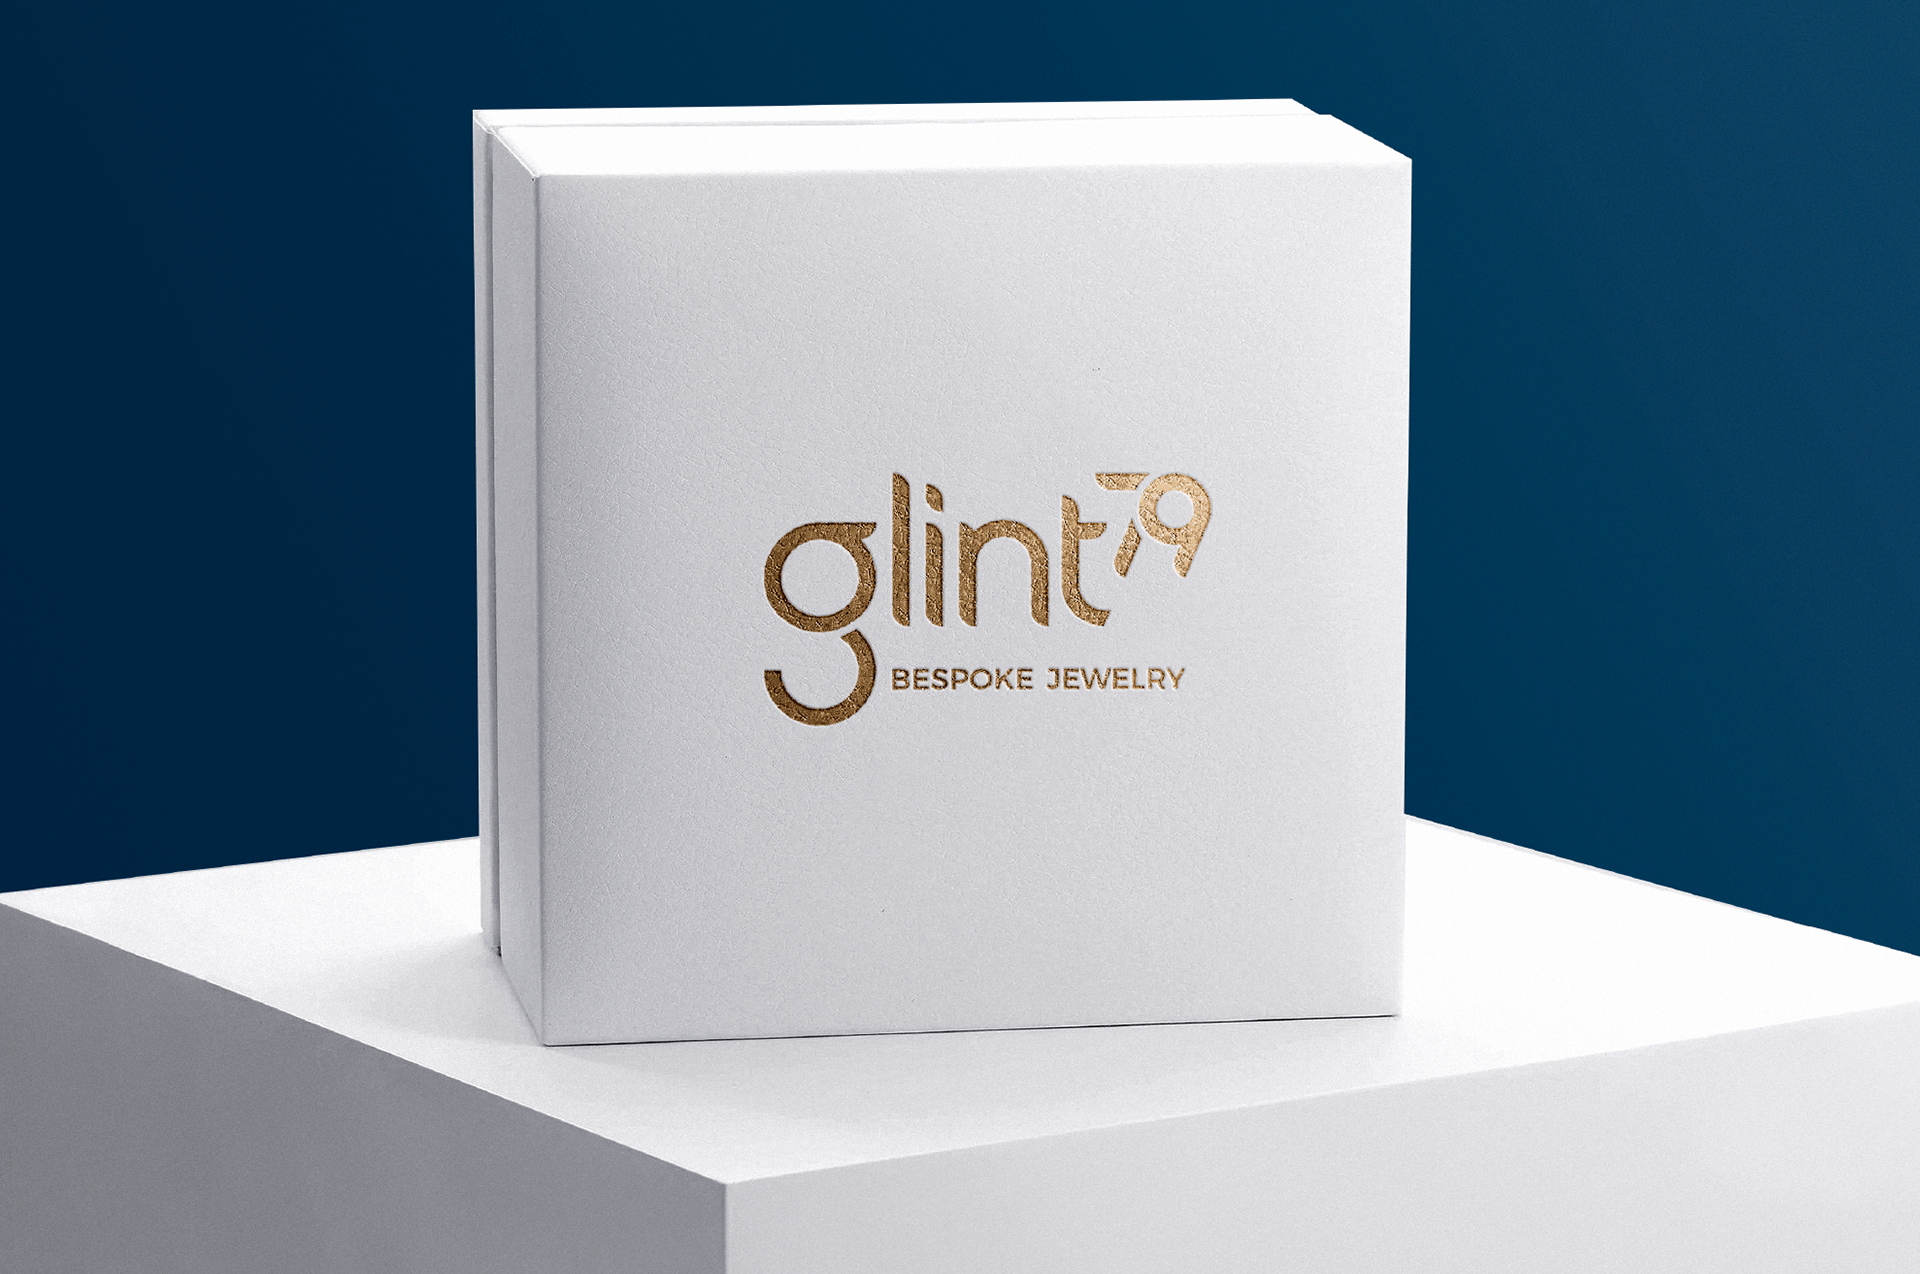 glint-79_bespoke-jewelry_brandmark-on-box